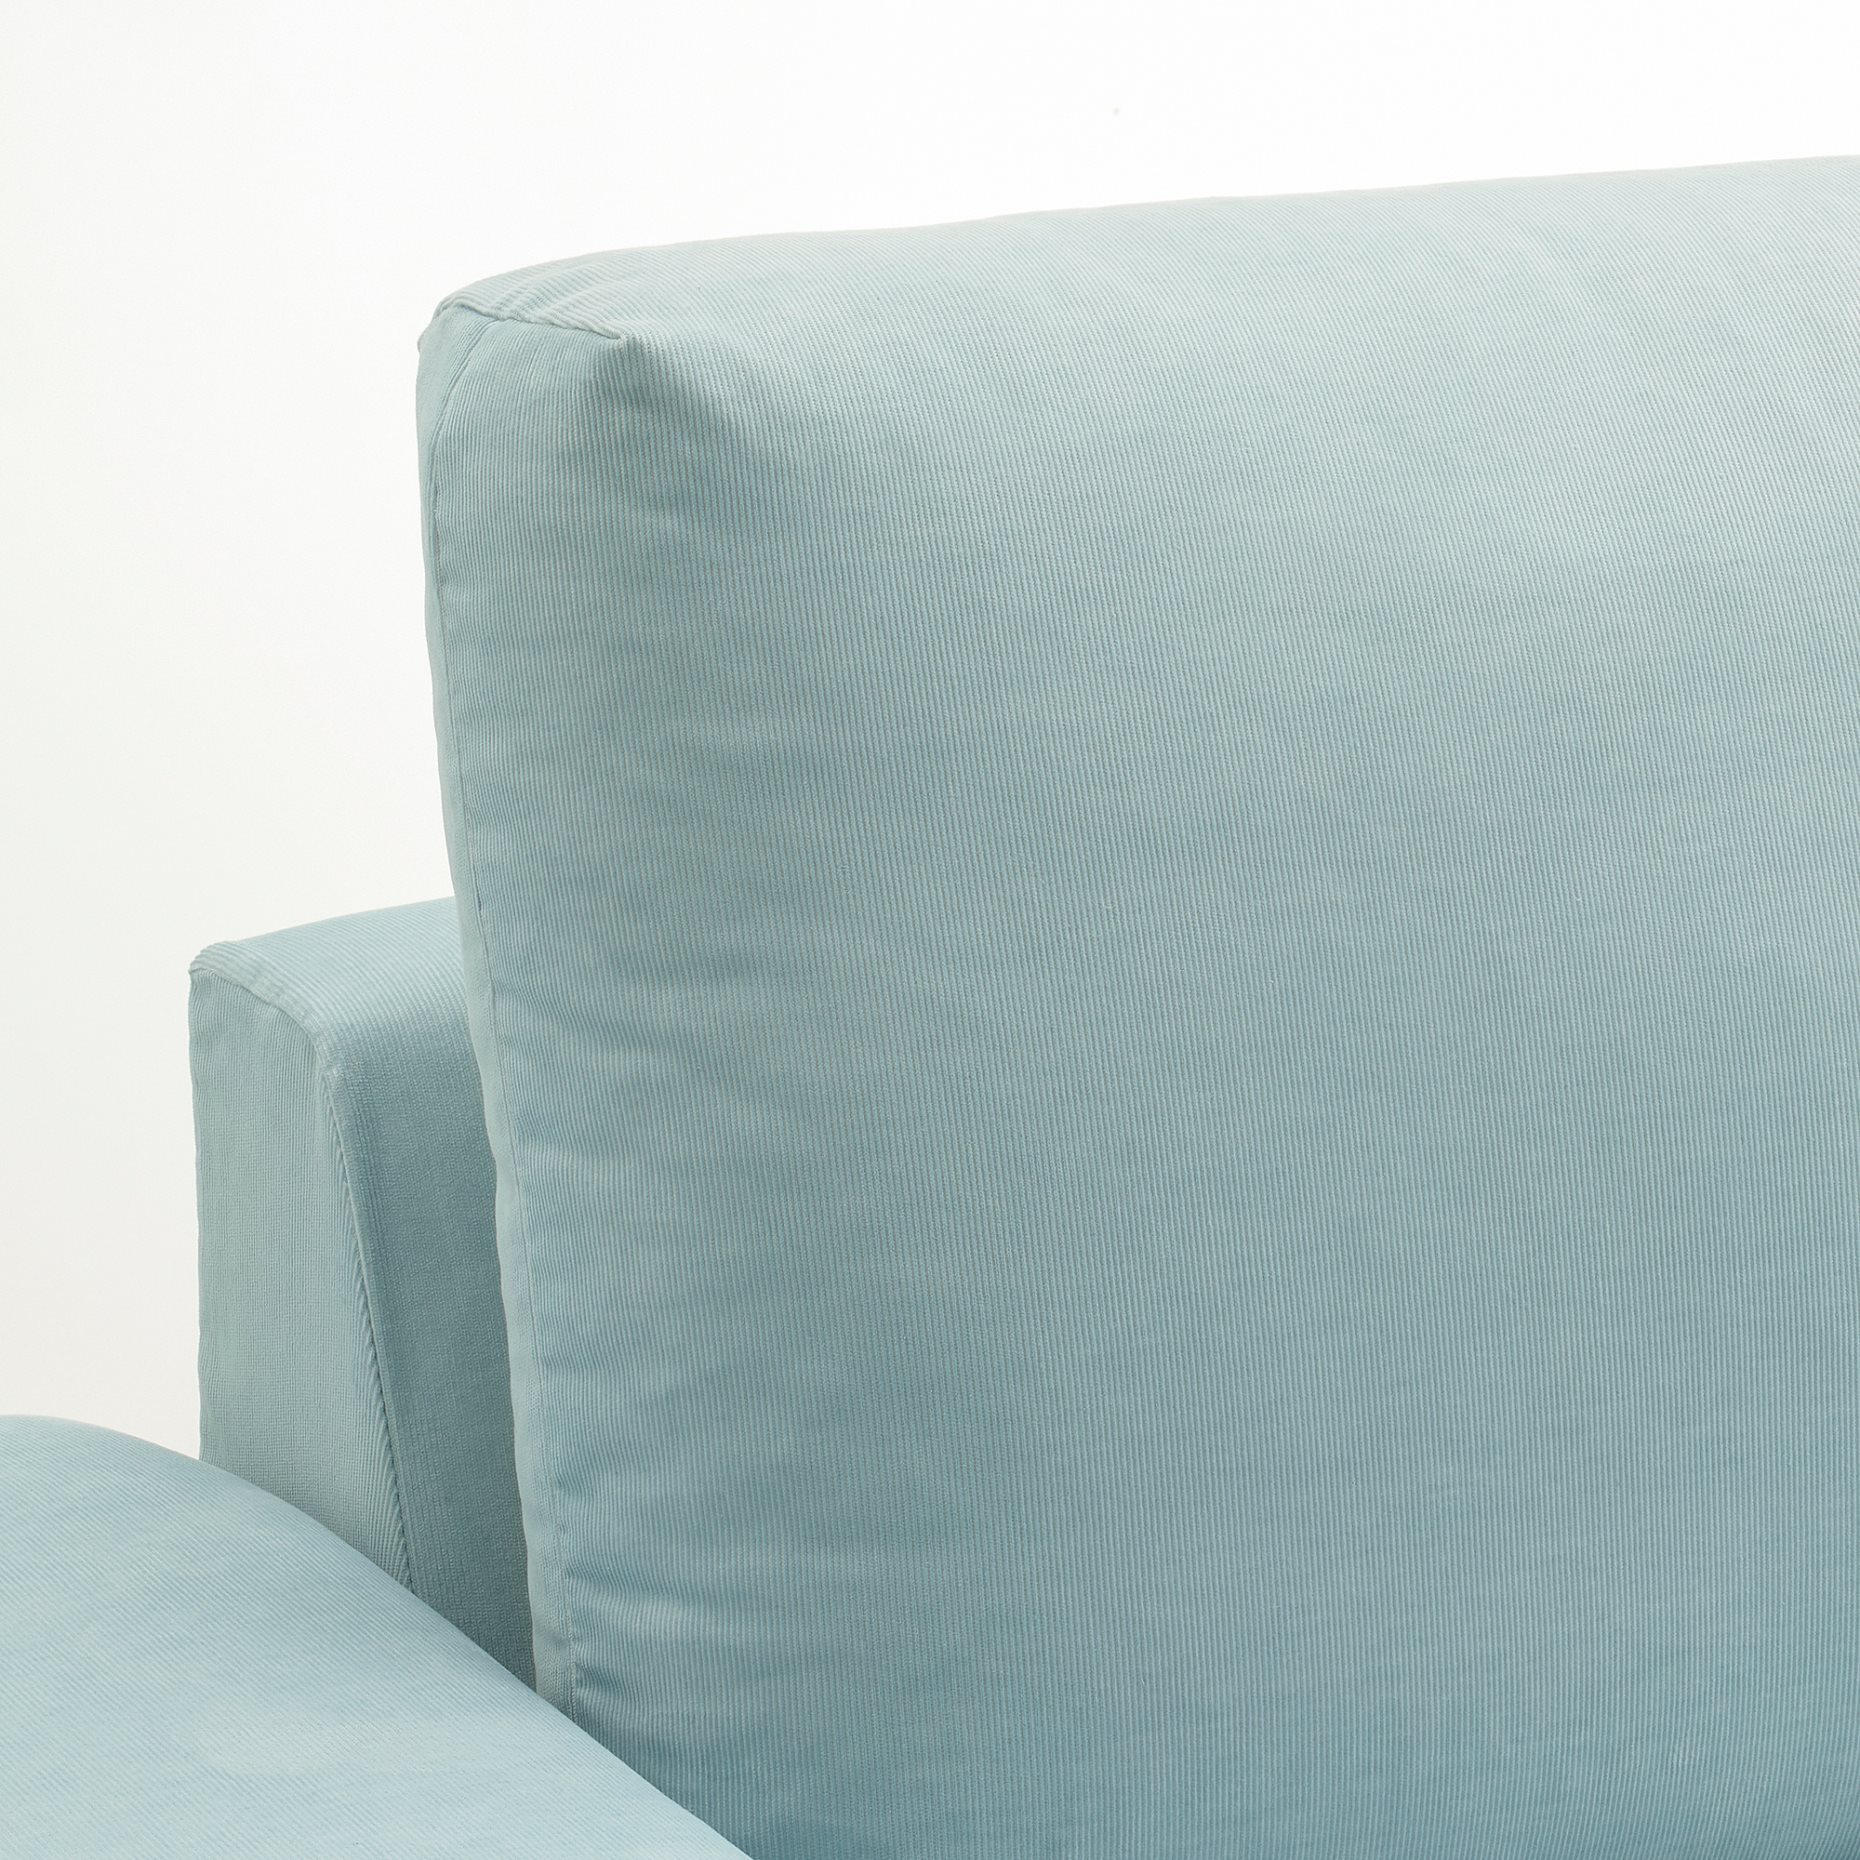 VIMLE, διθέσιος καναπές-κρεβάτι με πλατιά μπράτσα, 595.372.02